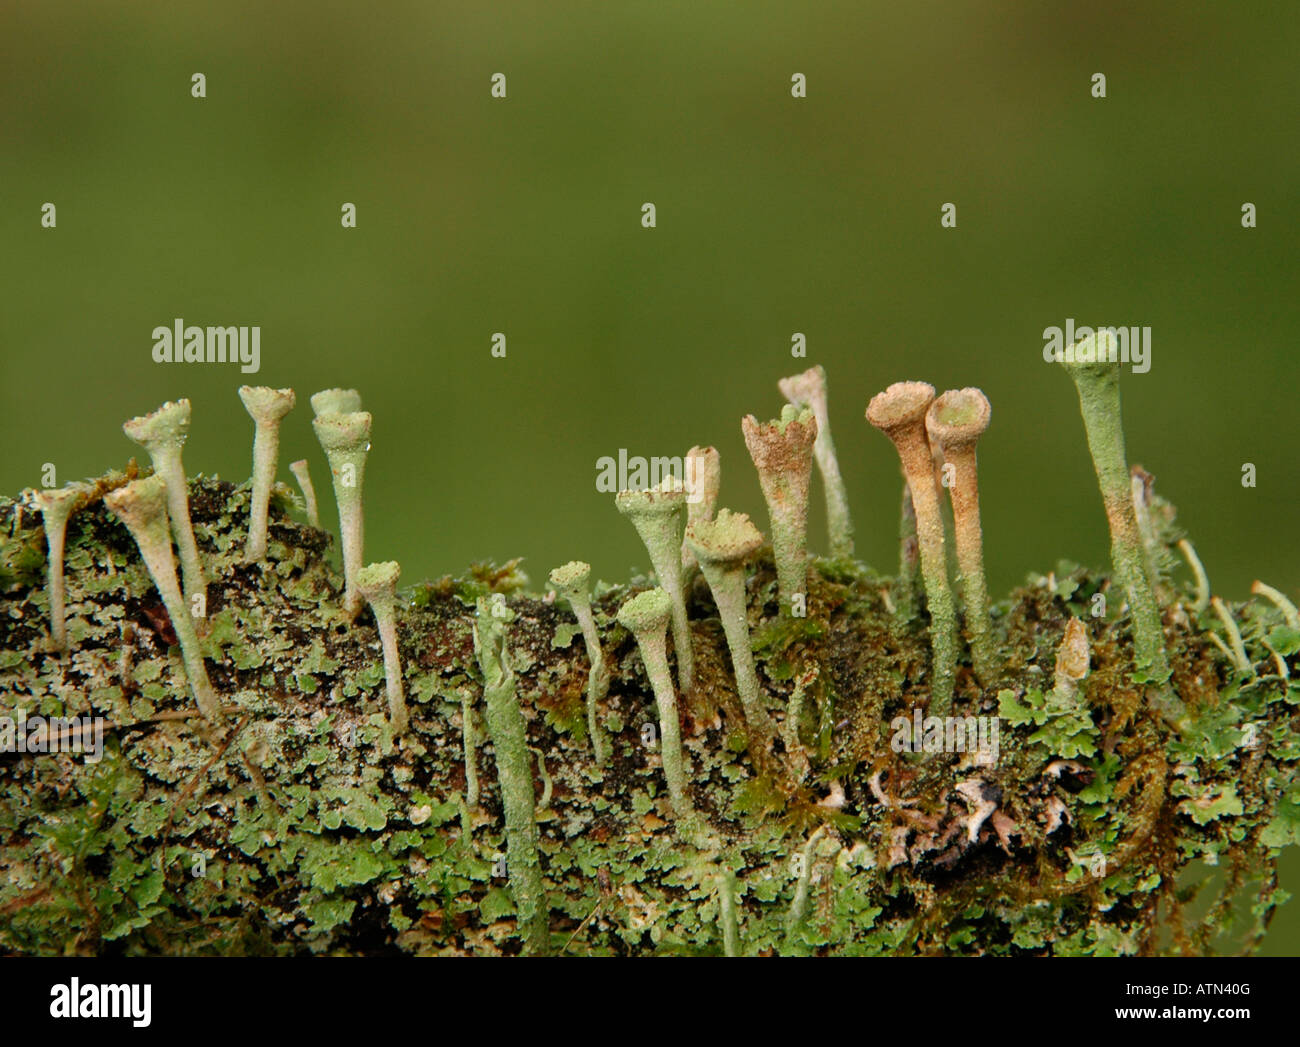 Kleine helle grüne Pilze - Chlorosplenium Aeruginascens - wachsen auf einem Baumstamm. Stockfoto